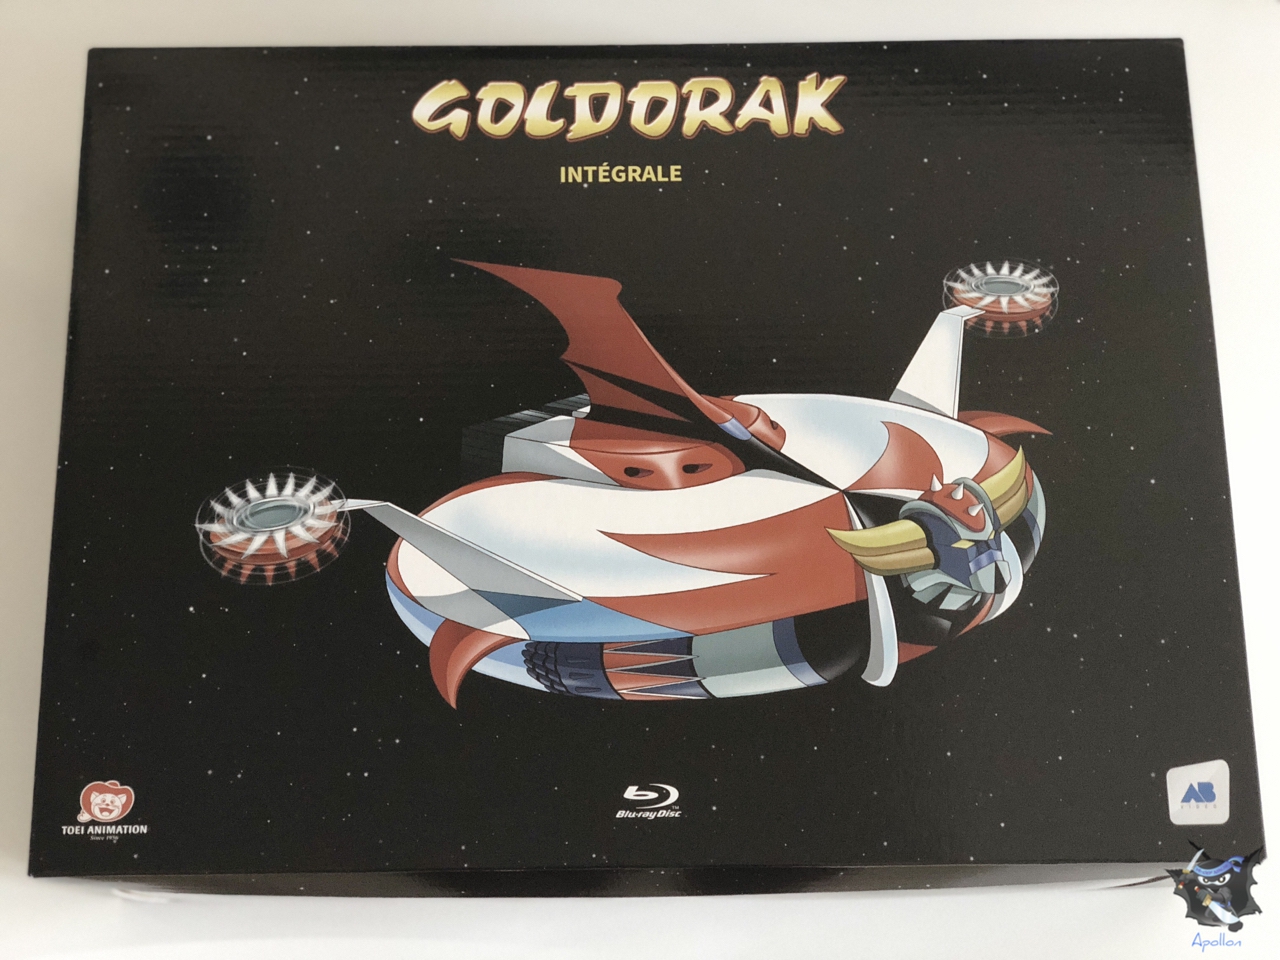  Goldorak Box 3 (coffret 5 Dvd) - DVD